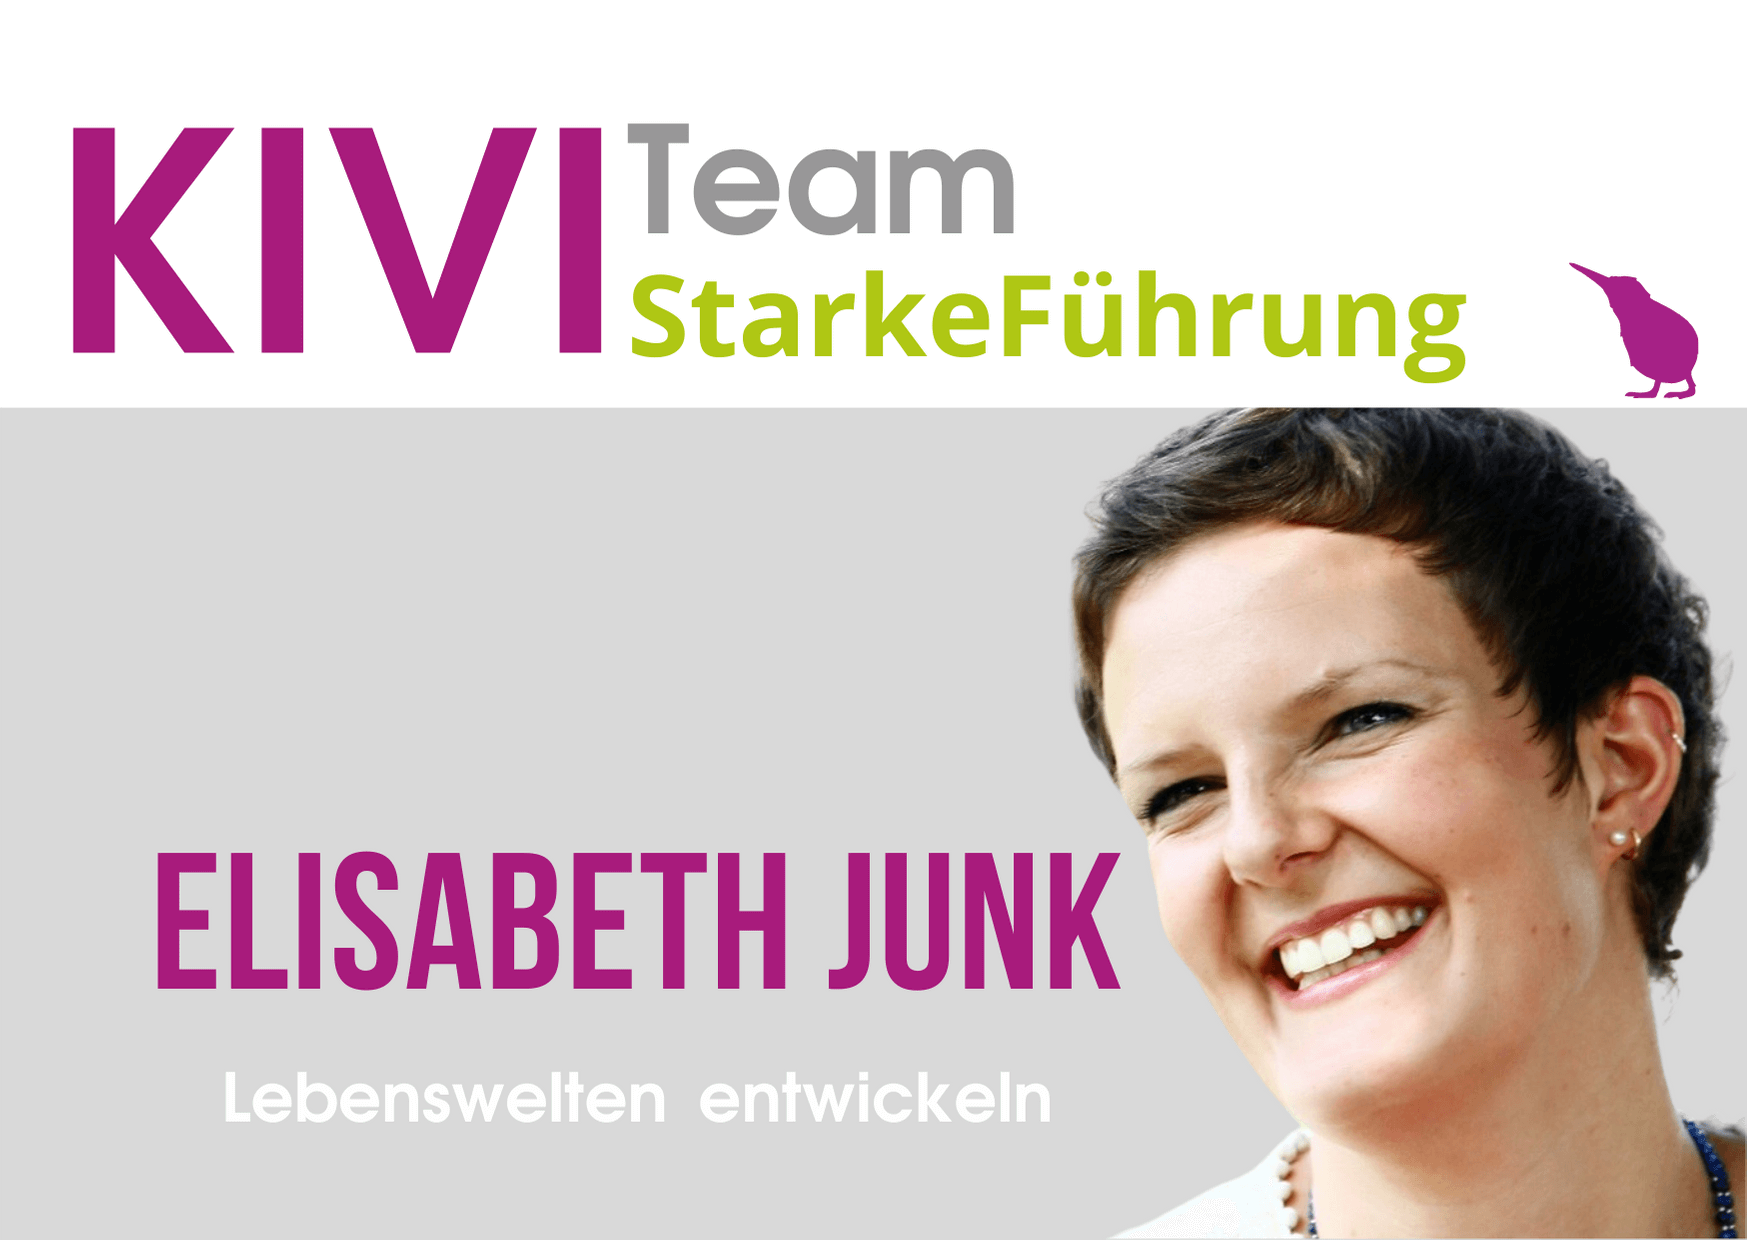 Elisabeth Junk - Lebenswelten entwickeln